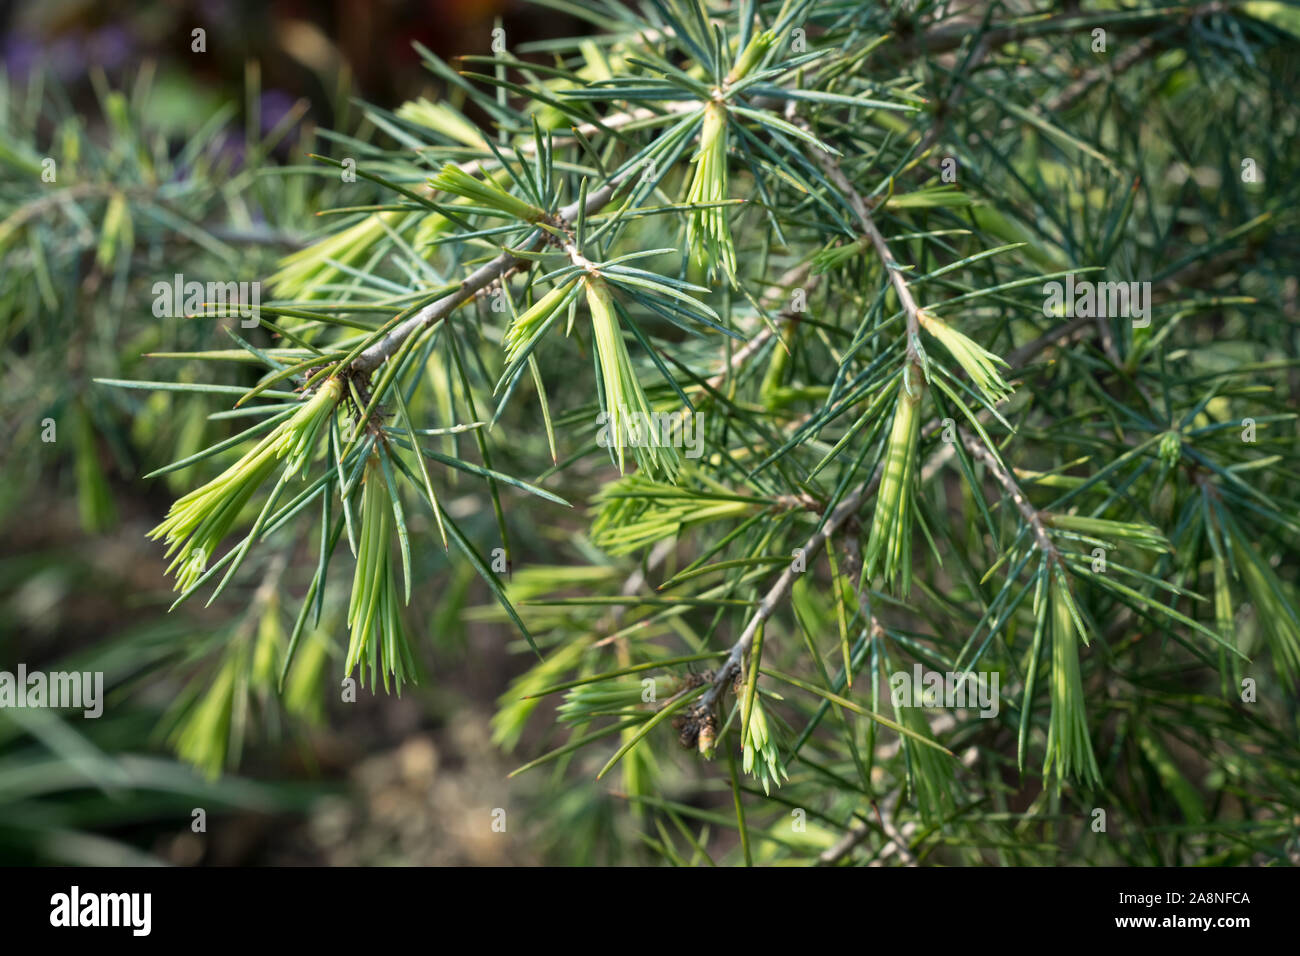 Young shoots of Deodar Cedar (Cedrus deodara), also known as himalayan cedar, in spring. Stock Photo